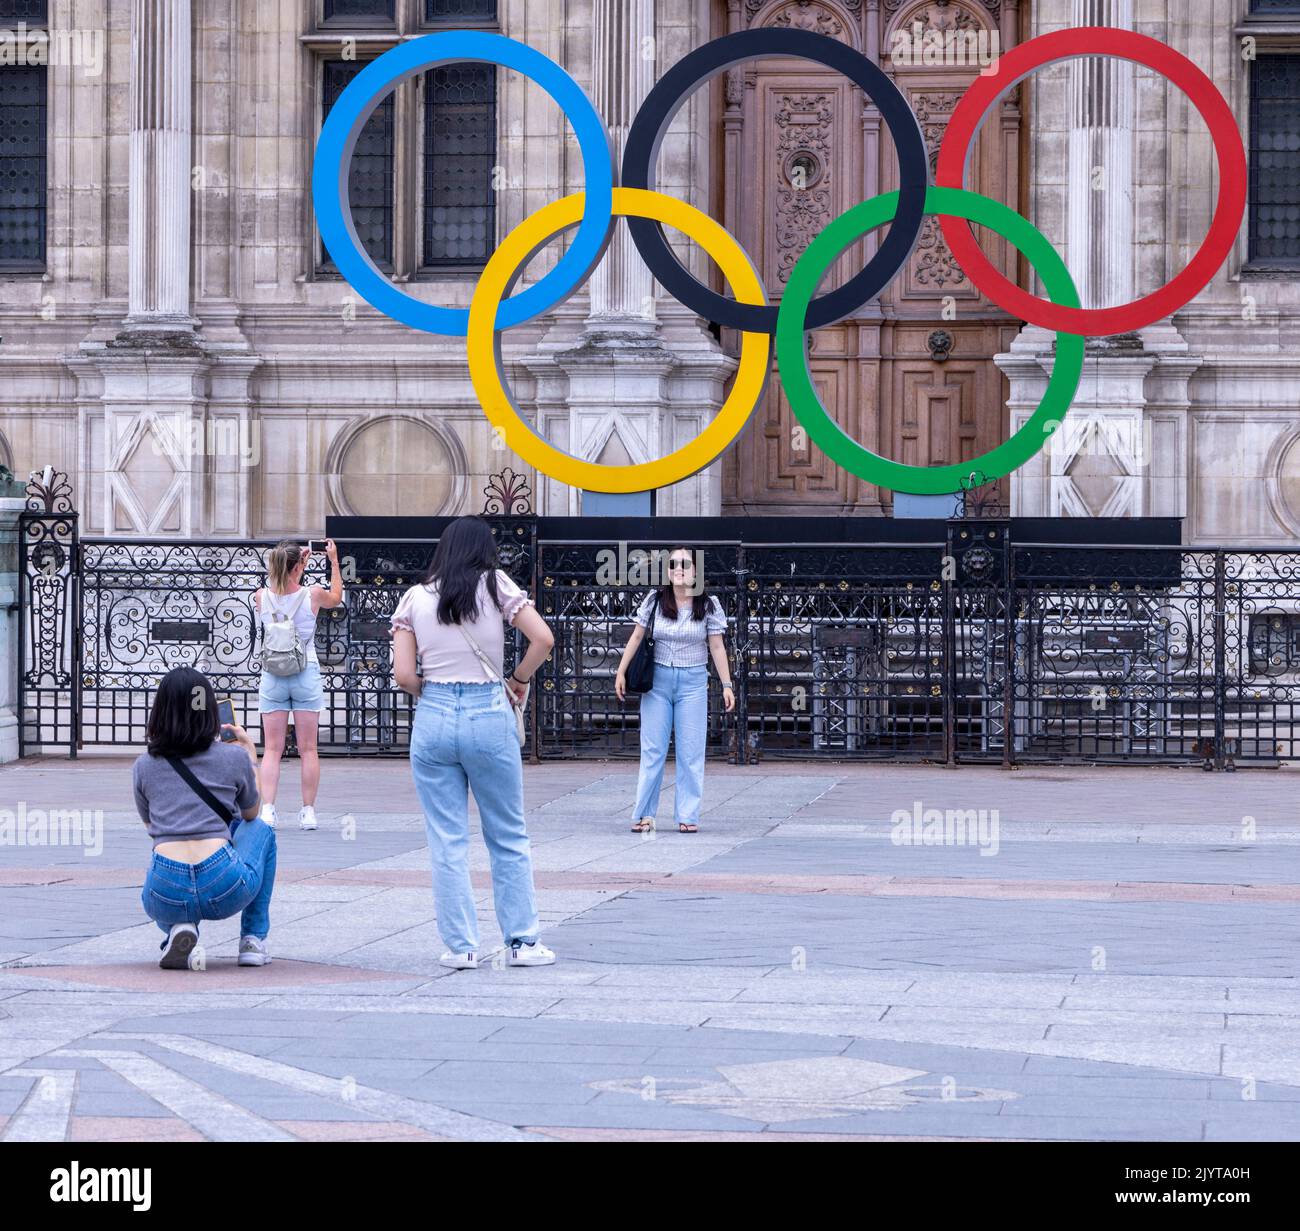 Touristes asiatiques prenant des photos devant le panneau des Jeux Olpymiques à l'Hôtel de ville, l'hôtel de ville de Paris, France Banque D'Images